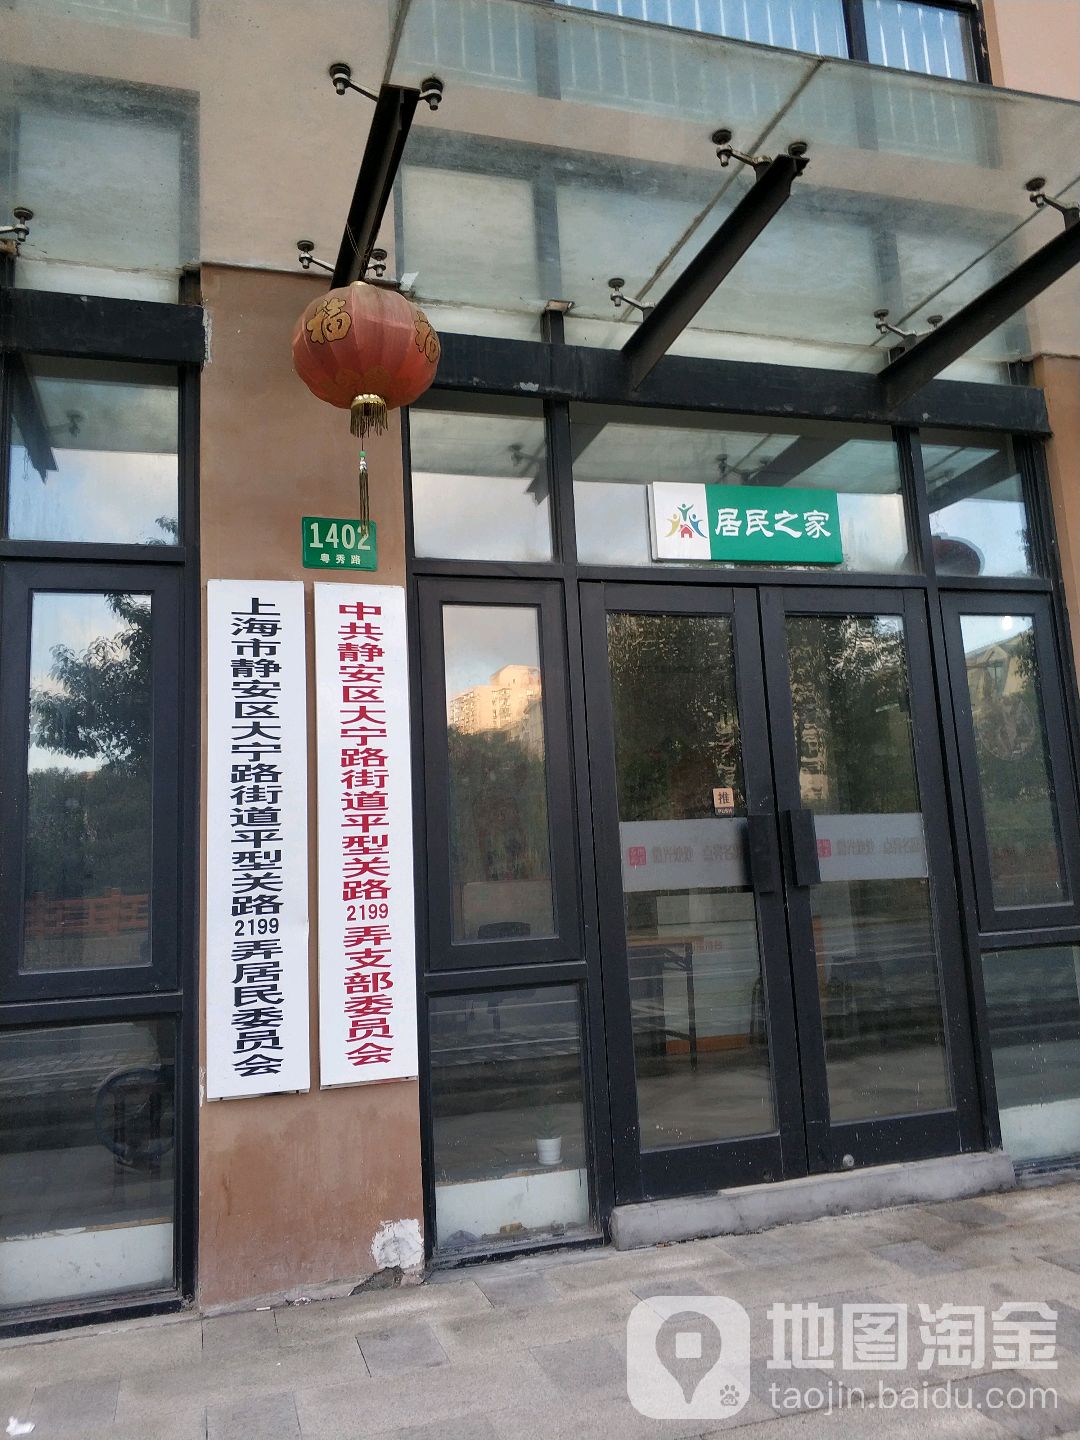 上海市静安区大宁路街道平型关路2199弄居民委员会会